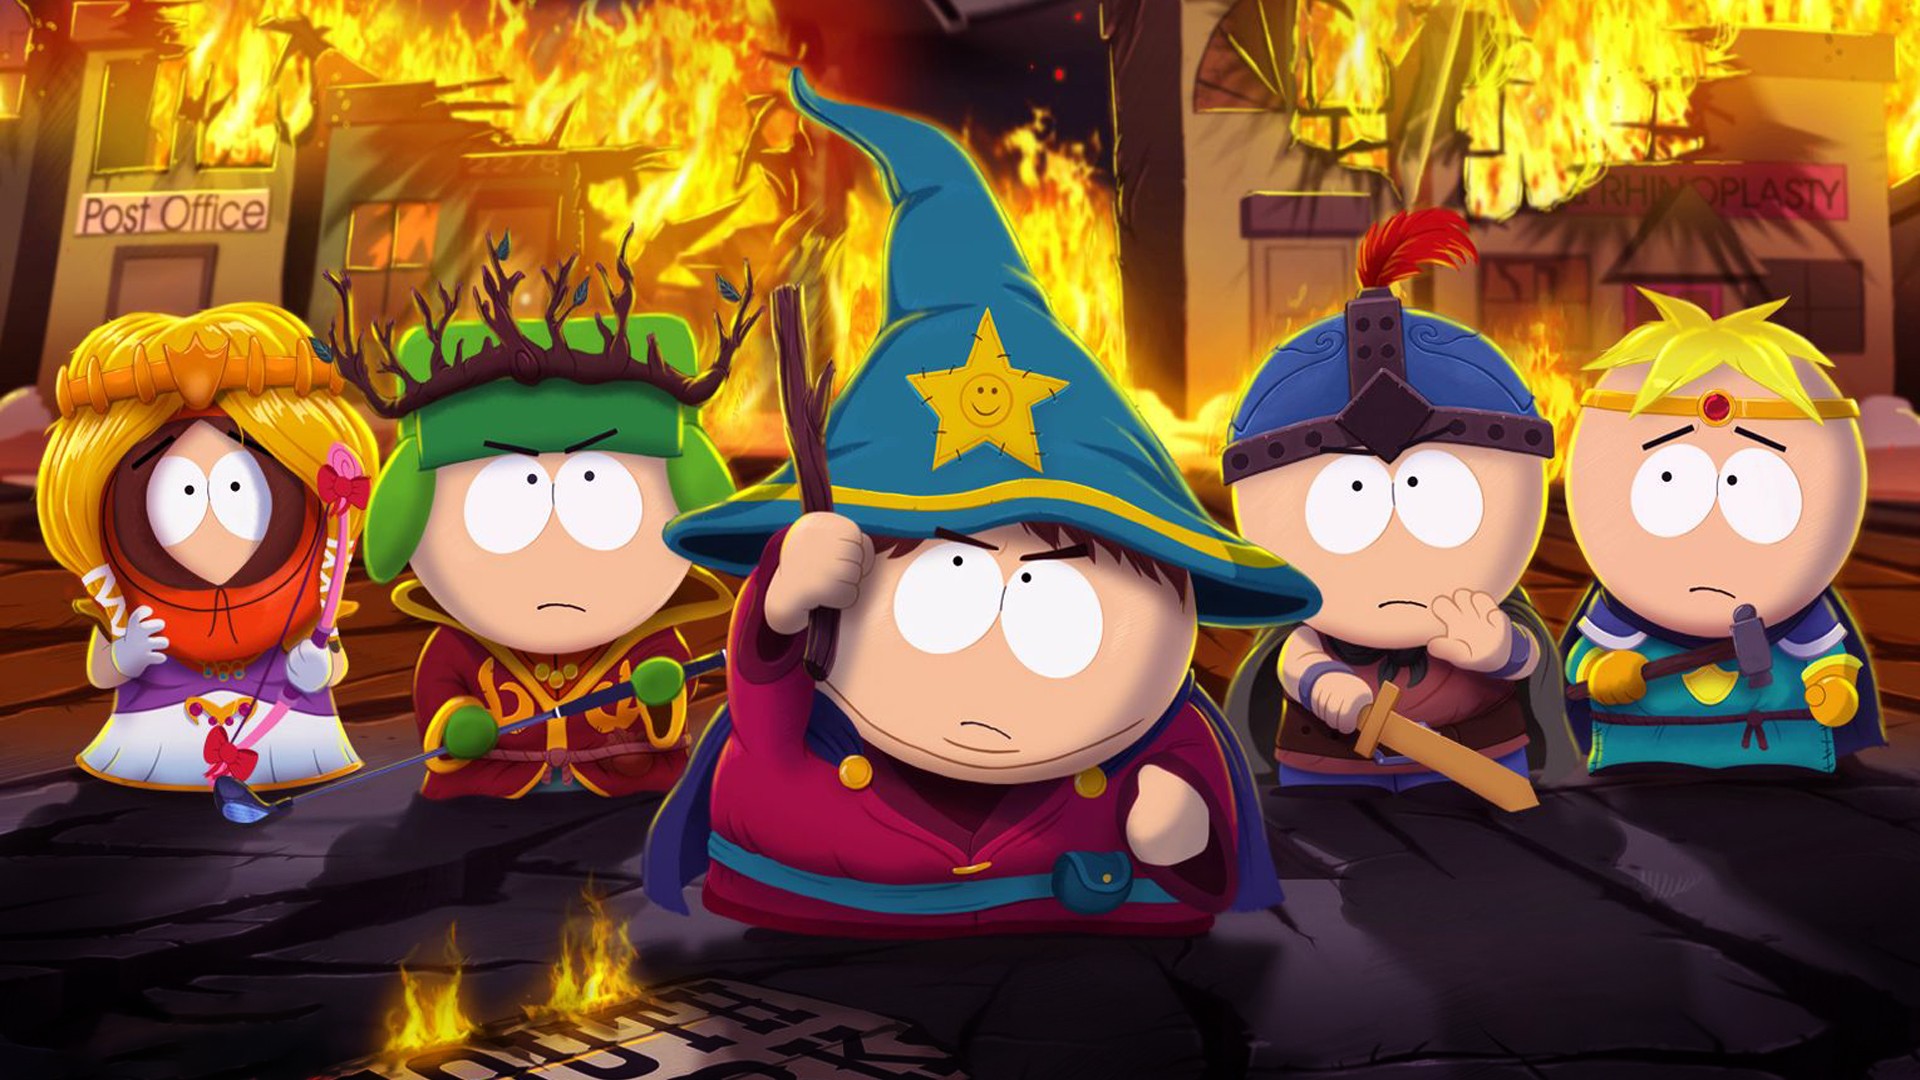 Descargar fondos de escritorio de South Park: The Stick Of Truth HD